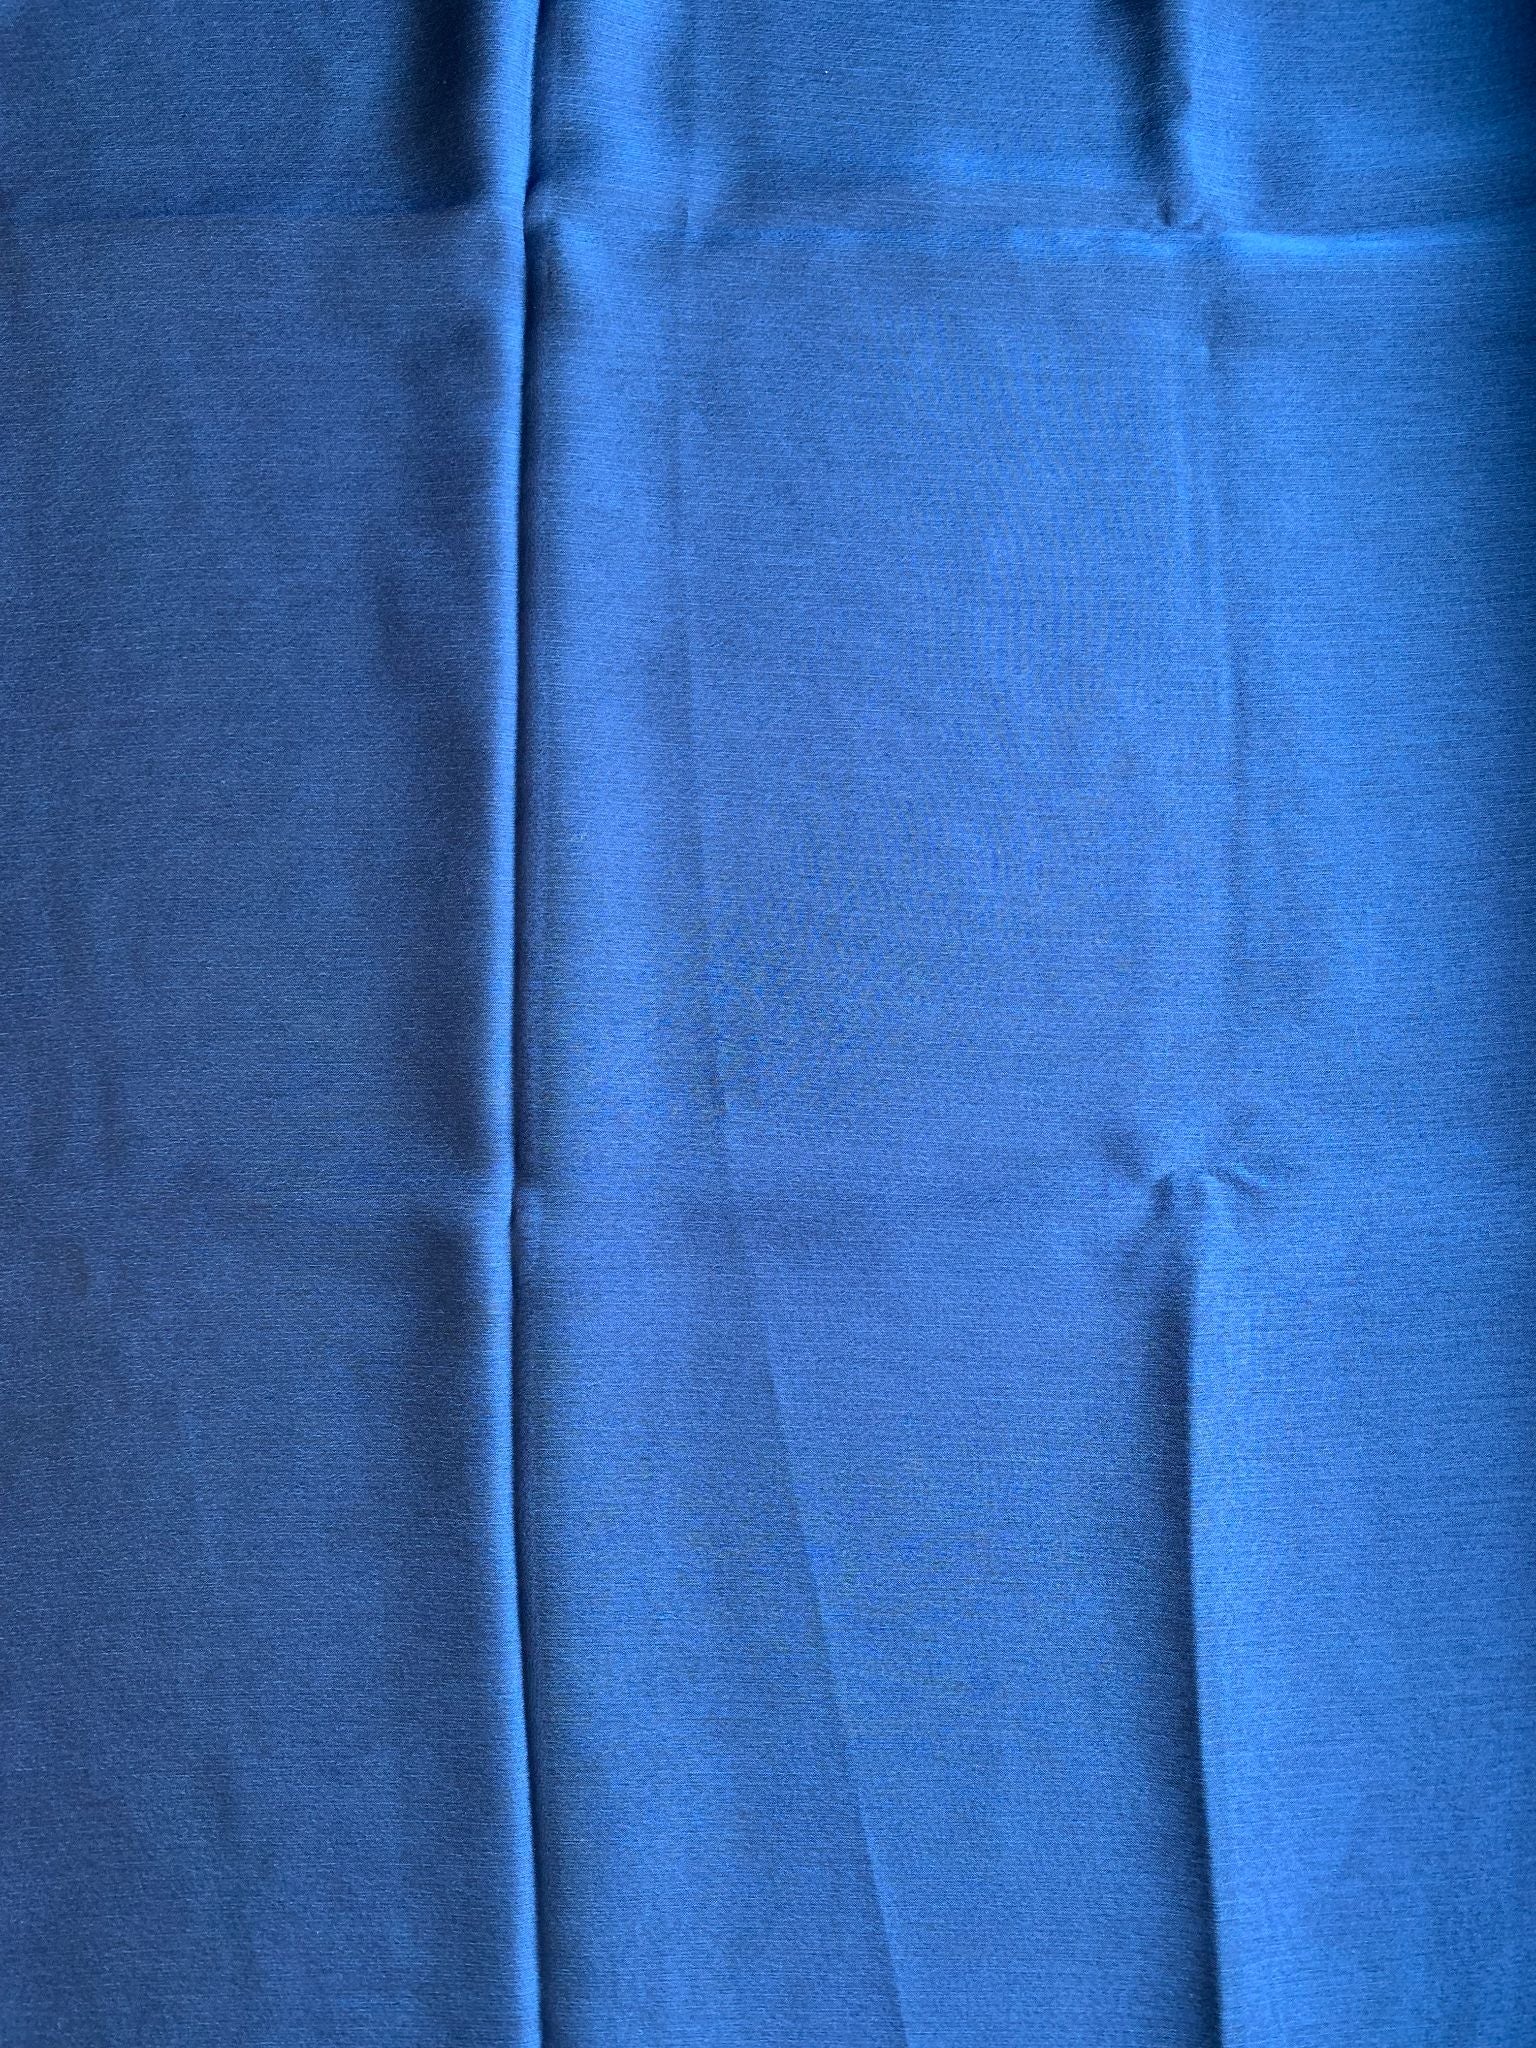 Tumman sininen hohtava sifonki – pala 1 - 1